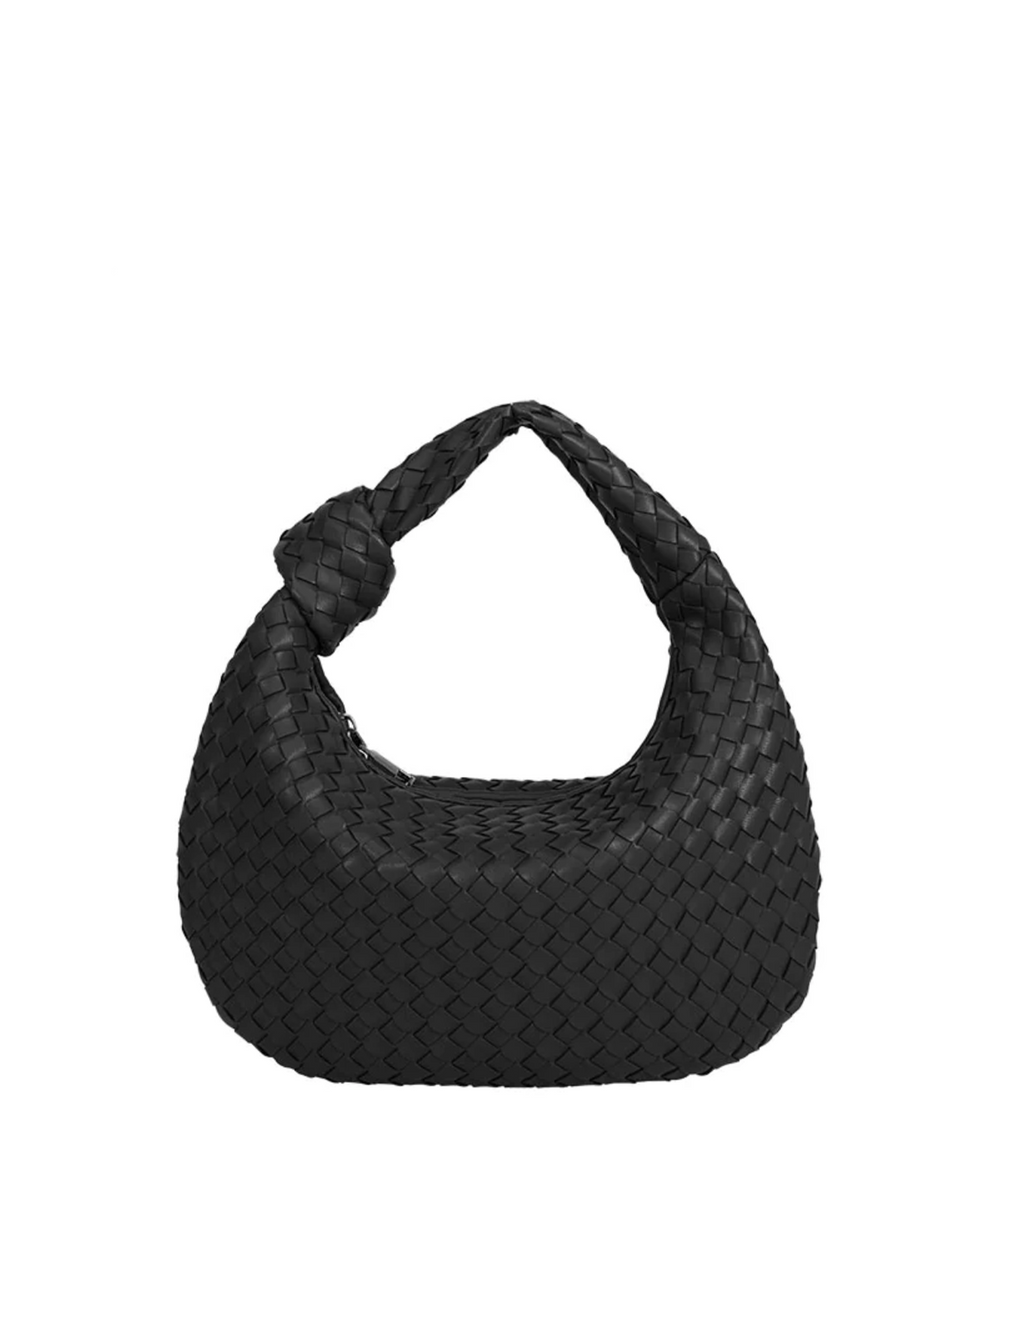 Drew Small Recycled Vegan Top Handle Bag, Black